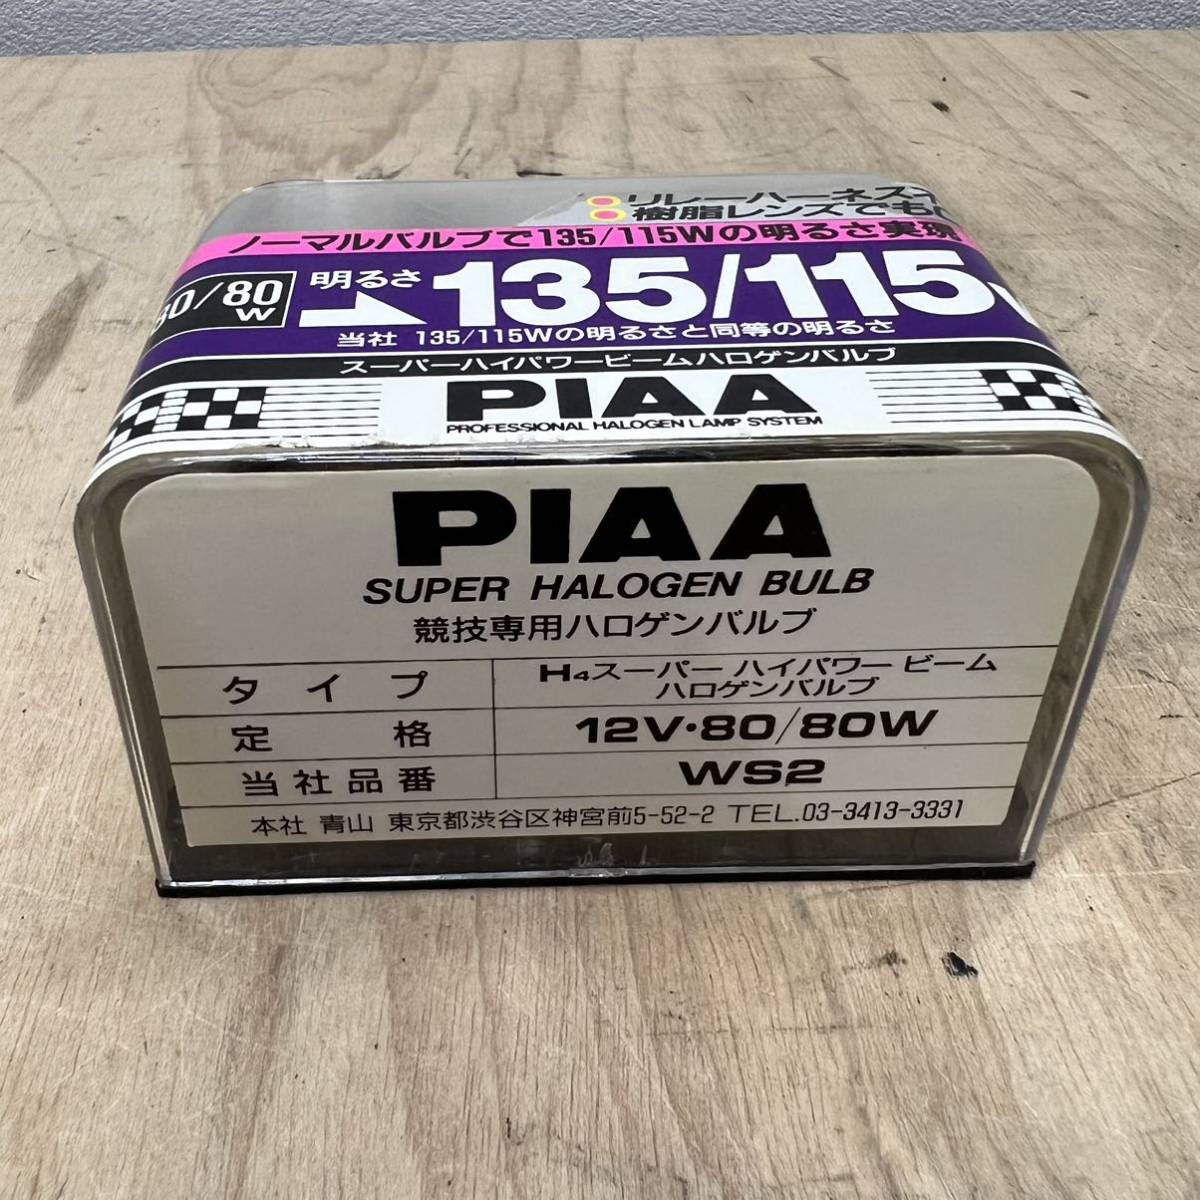 PIAA スーパーハイパワービーム ハロゲンバルブ H4 80/80W 明るさ135/115W WS2 _画像6